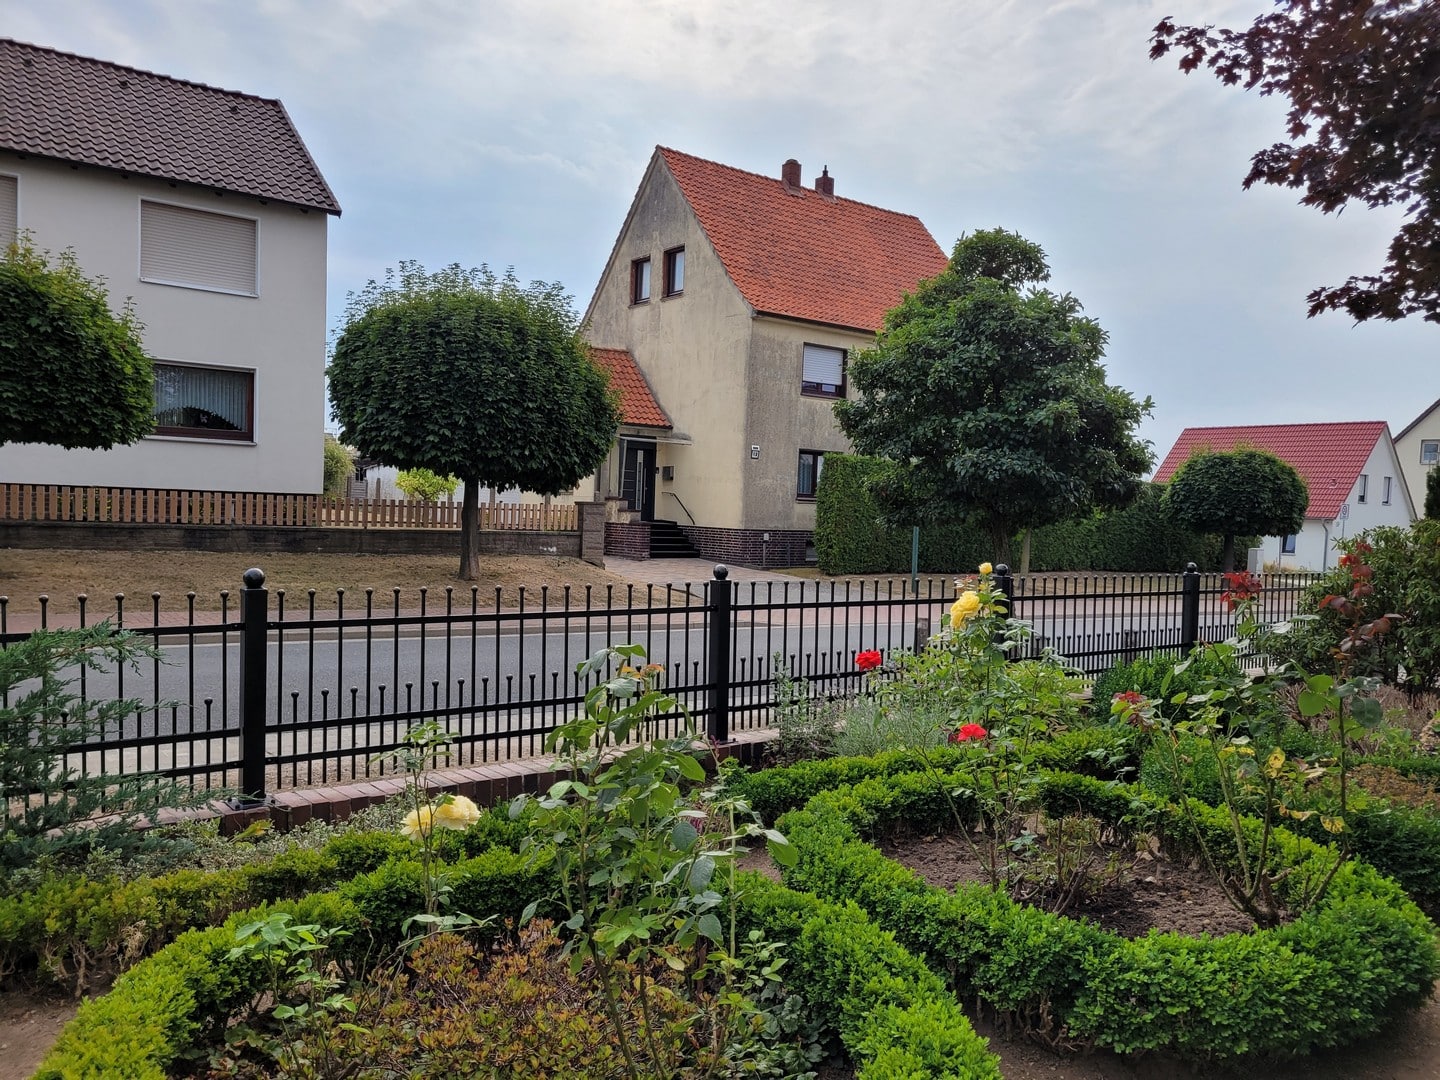 Wohnhaus mit Garten und Zaun in Deutschland.